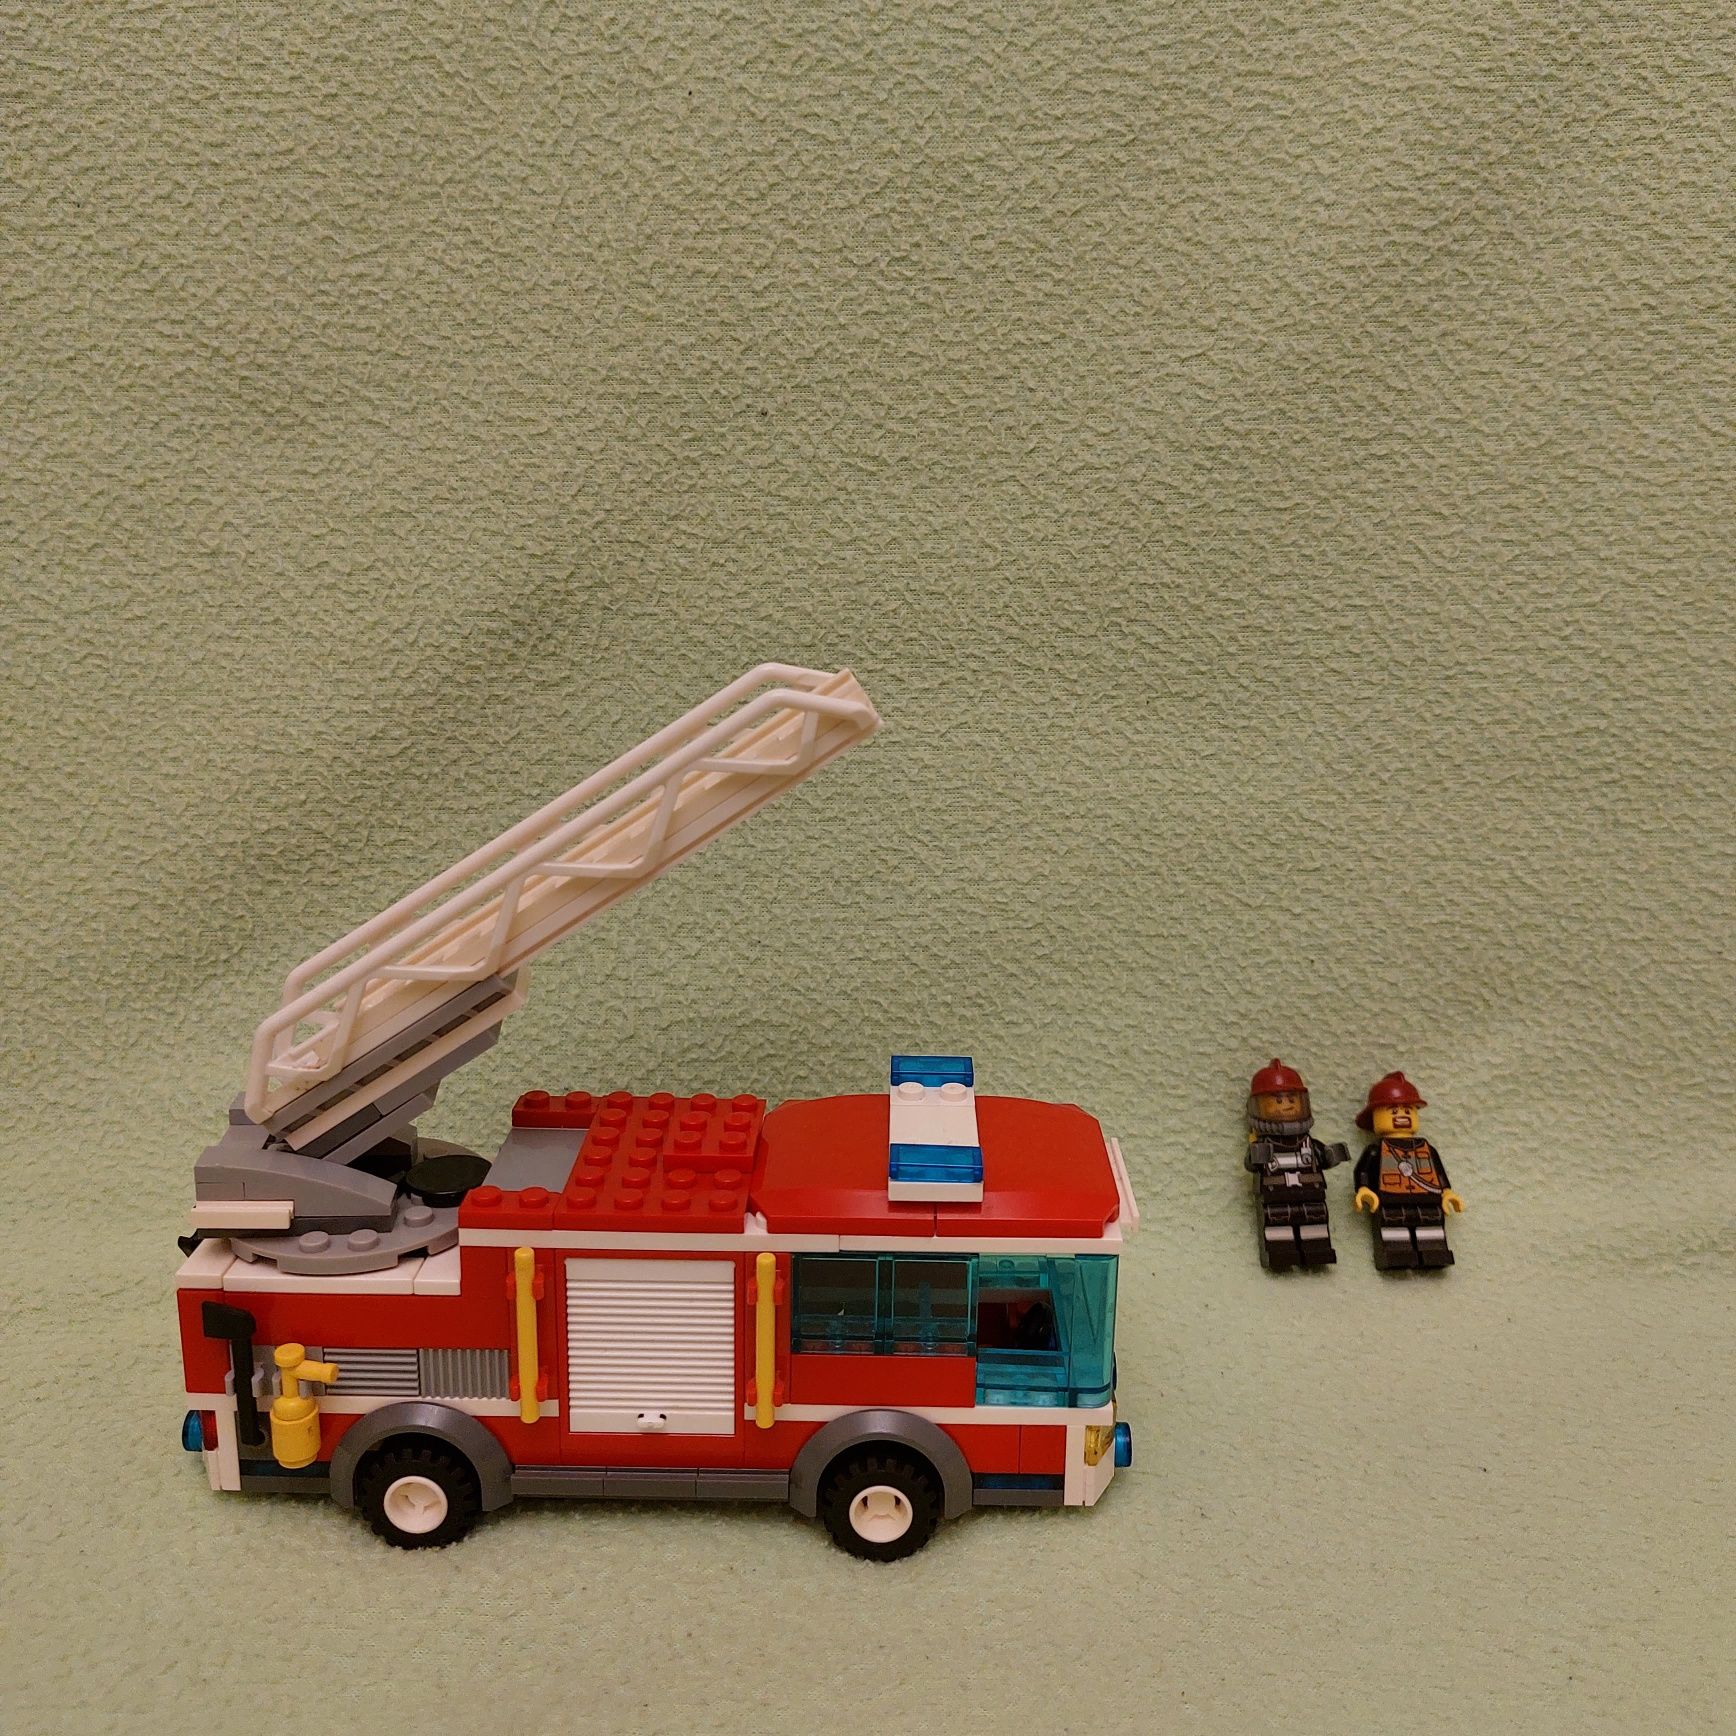 Lego  City Wóz Strażacki  60002 z 2013 r. Kompletny zestaw